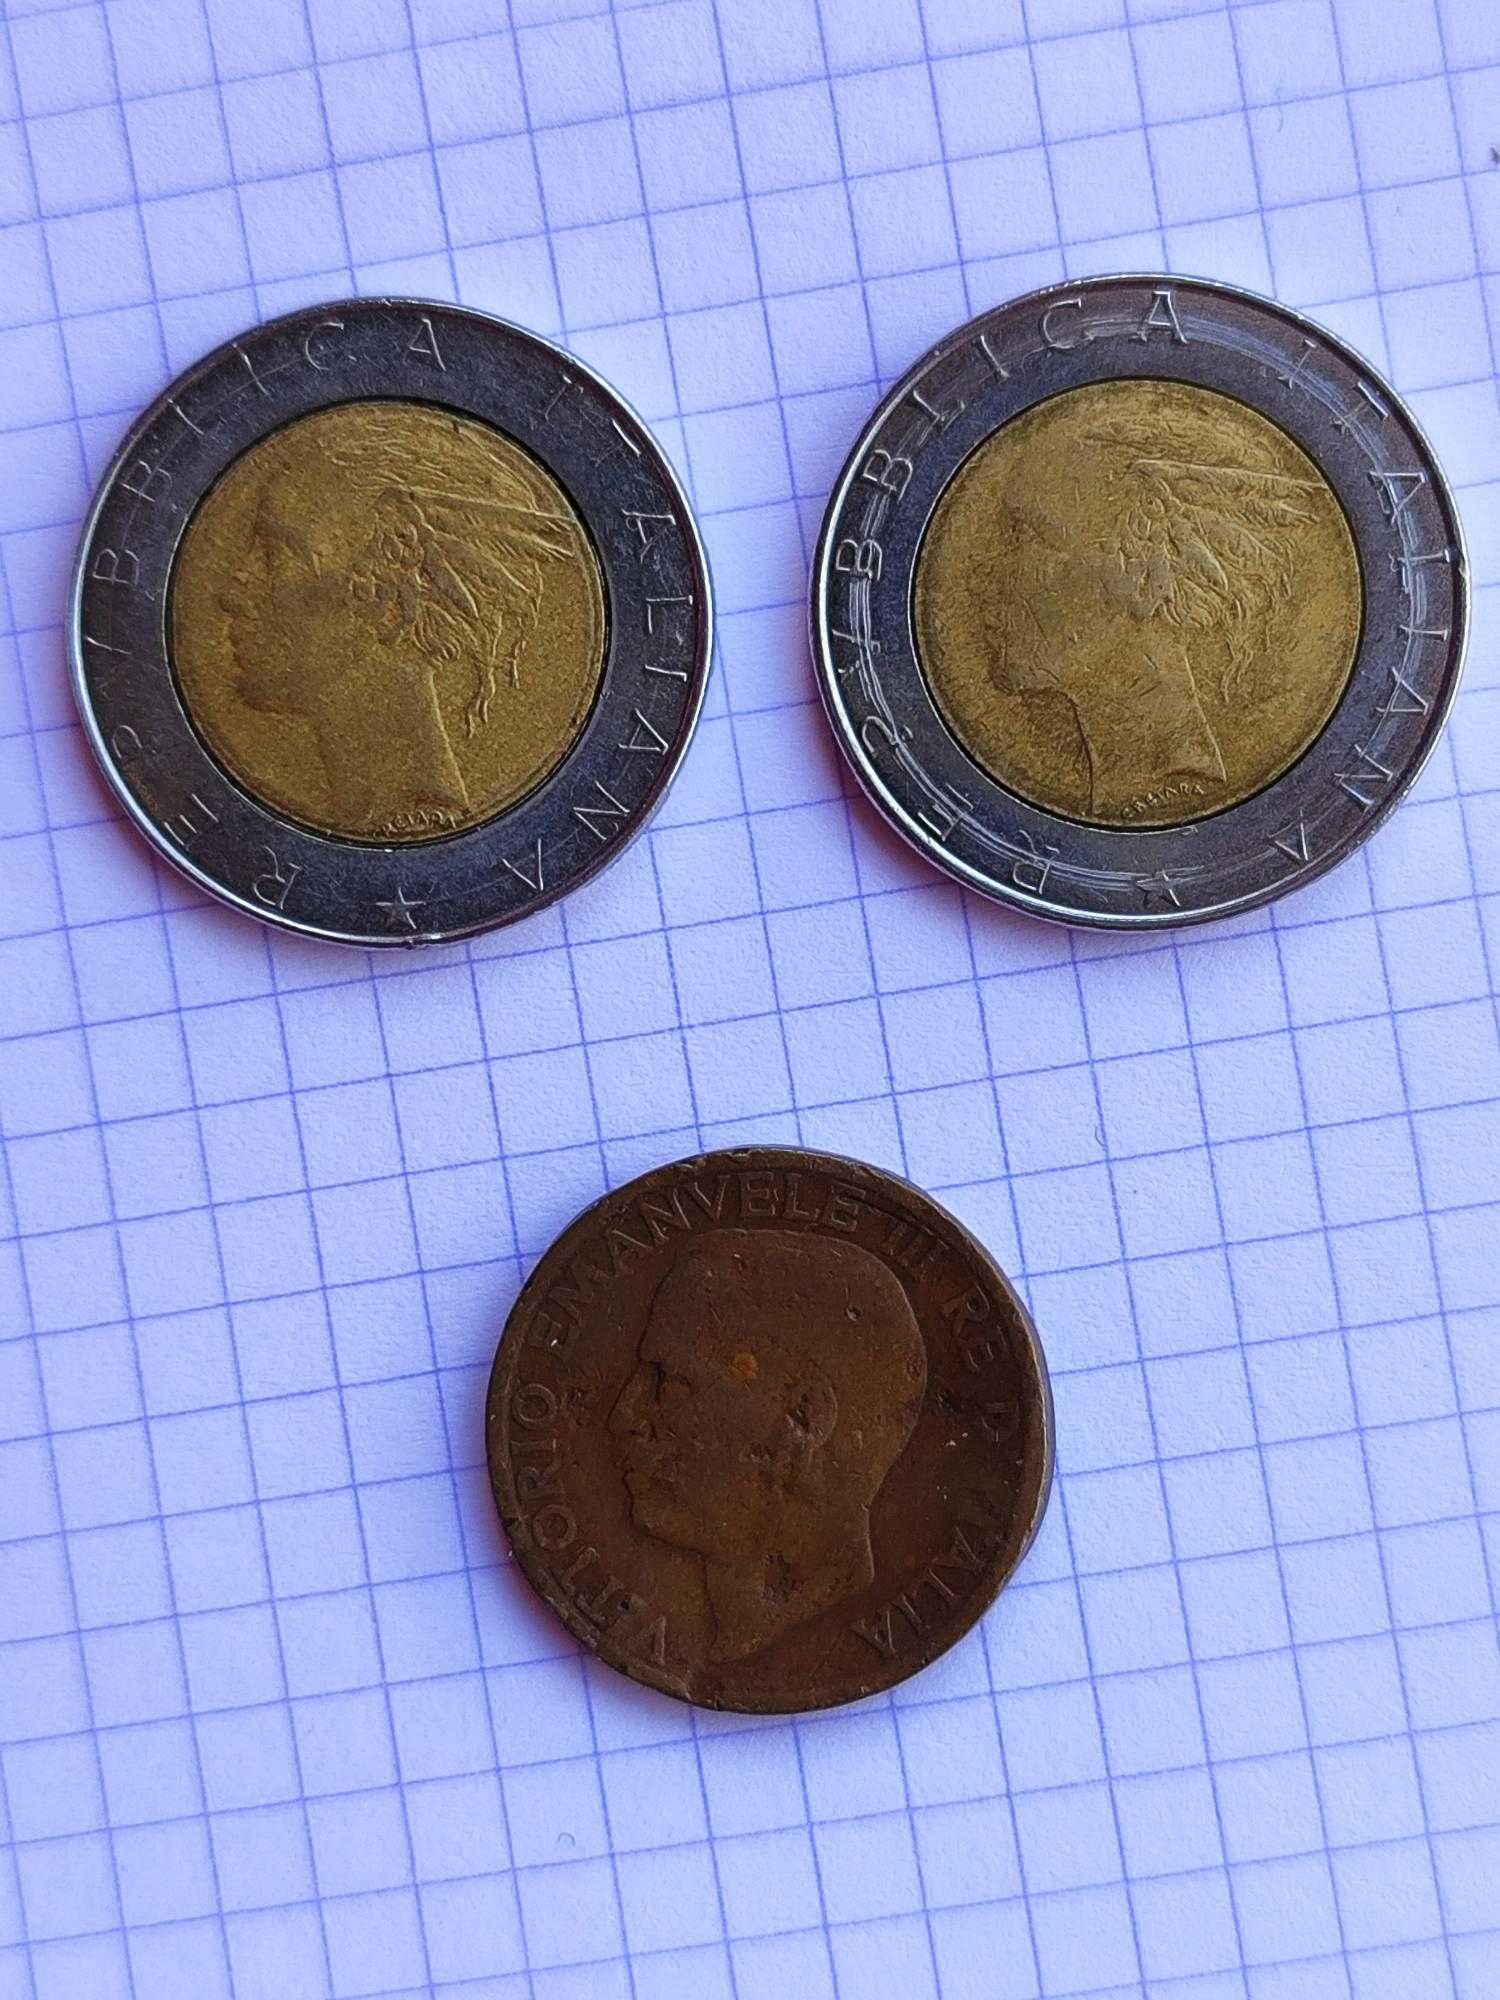 Lote de 23 moedas italianas pré euro (liras), todas diferentes .